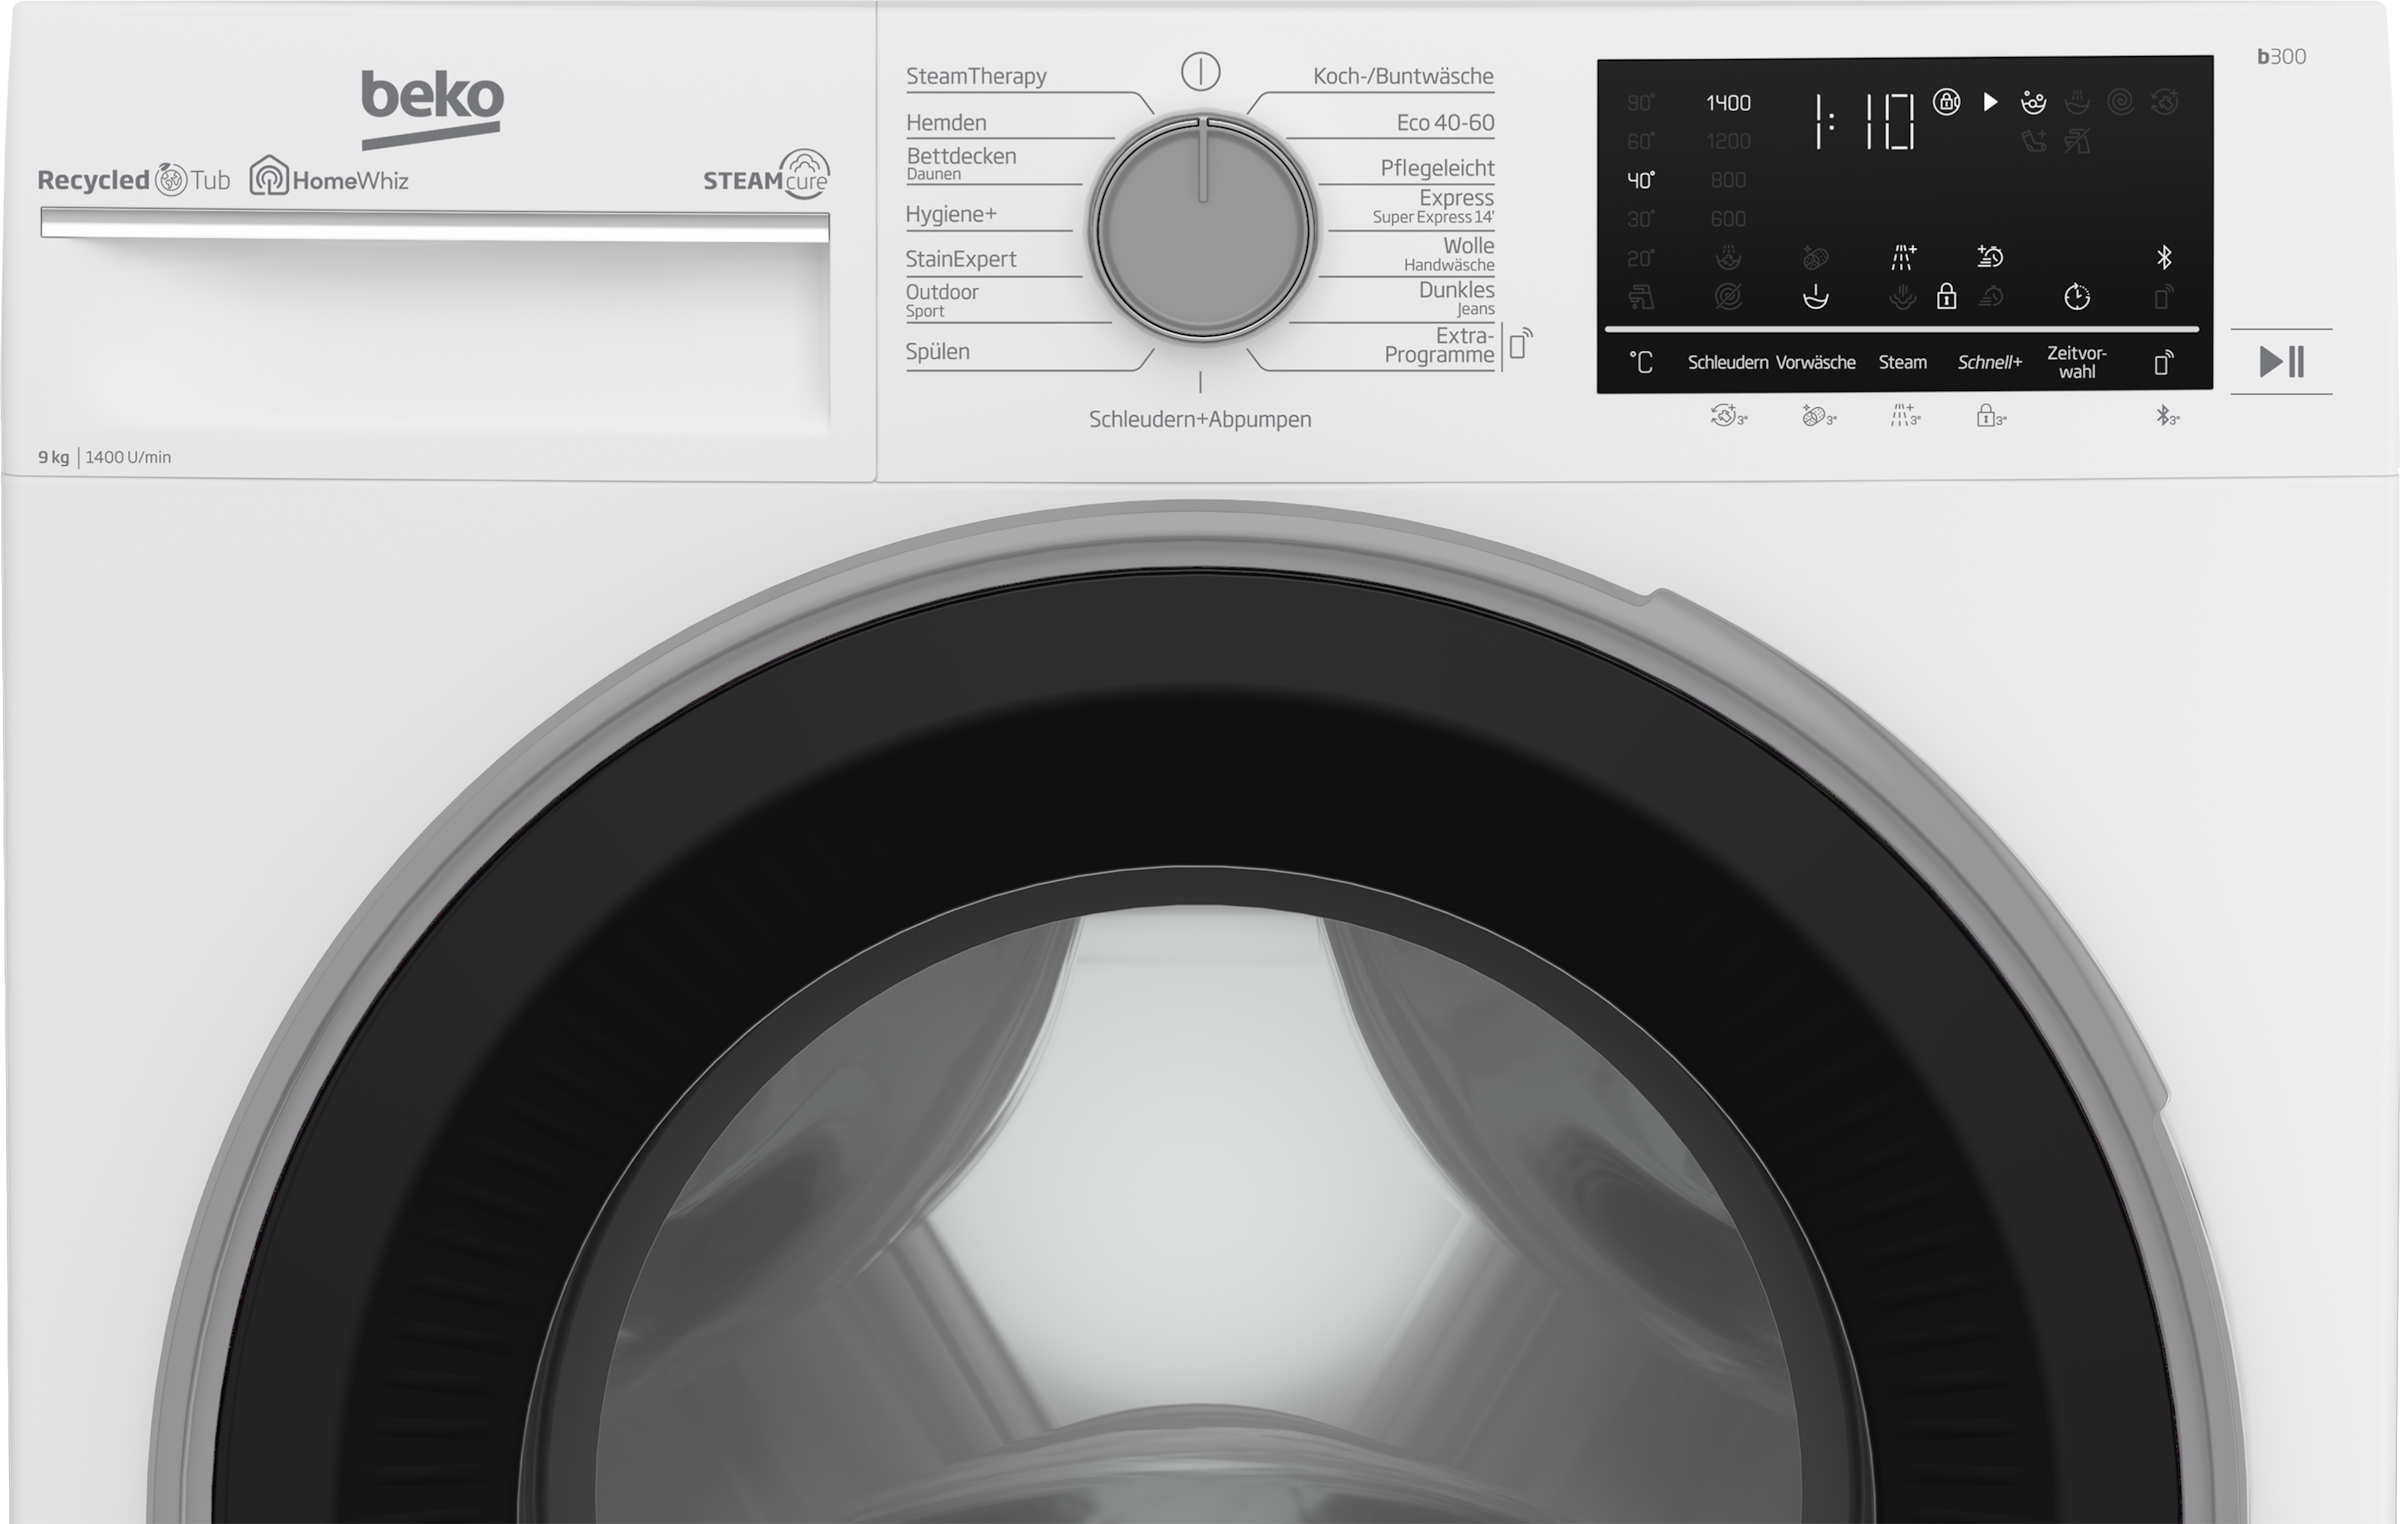 kg, XXL Waschmaschine, U/min, b300, Jahren 9 - 3 B3WFU59415W2, mit BEKO Garantie allergenfrei 99% SteamCure 1400